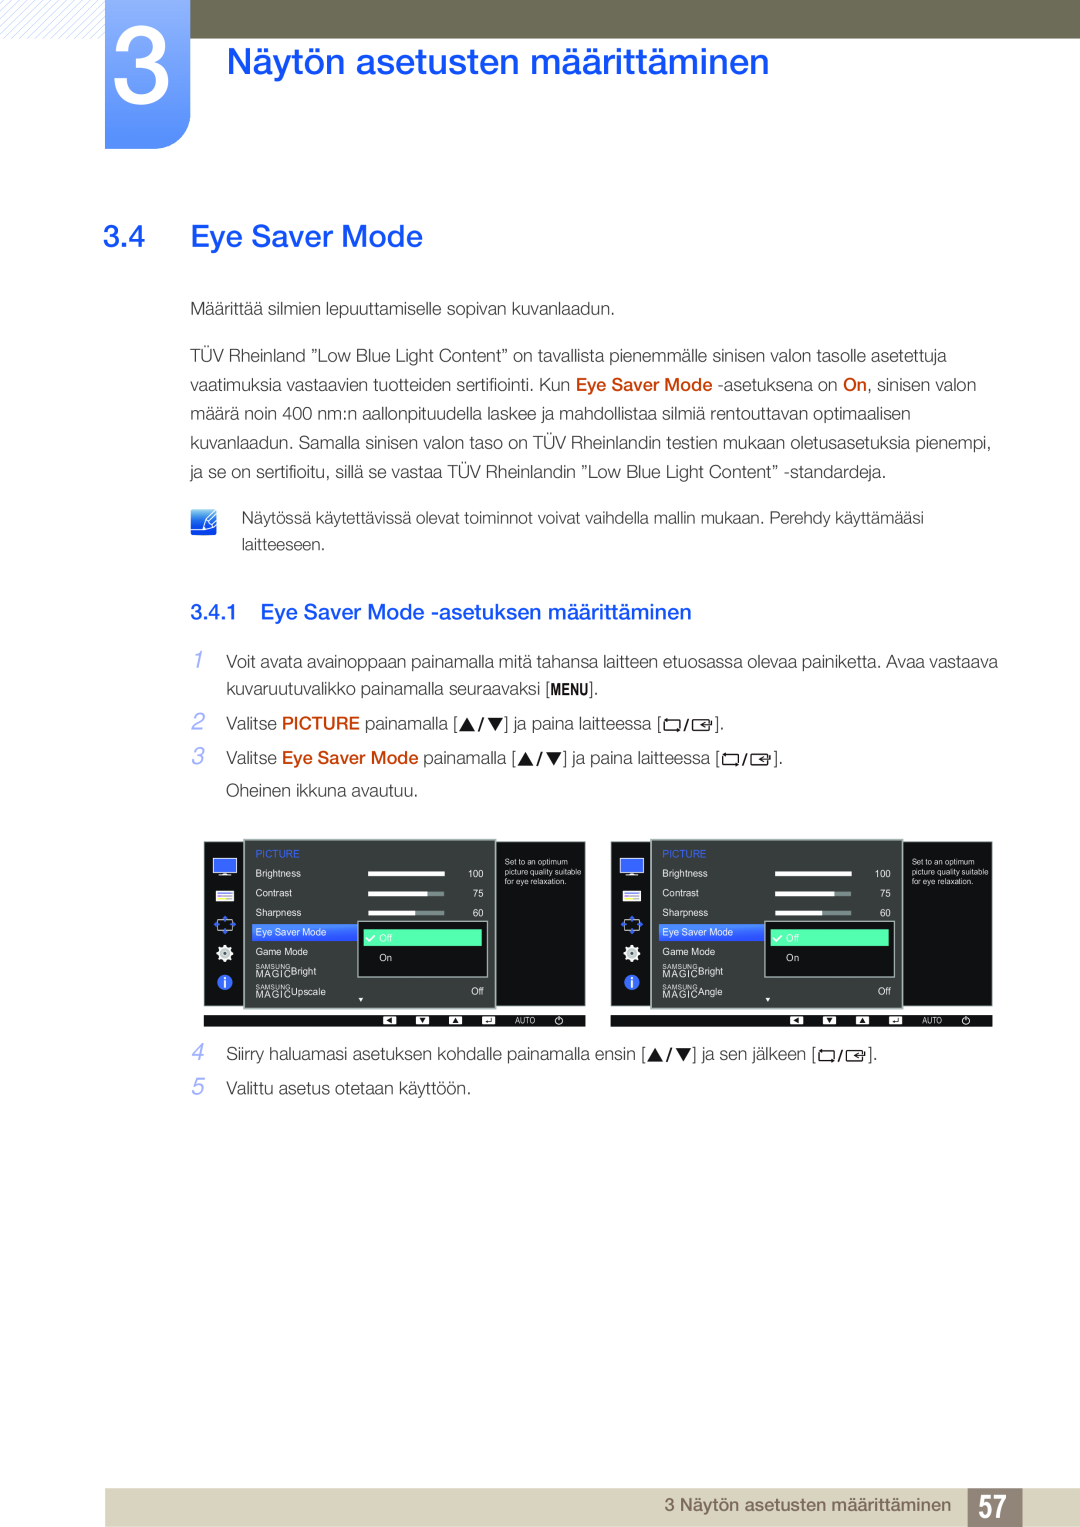 Samsung LS23E65UDS/EN, LS23E65UDC/EN manual Eye Saver Mode -asetuksen määrittäminen, 3 Näytön asetusten määrittäminen 